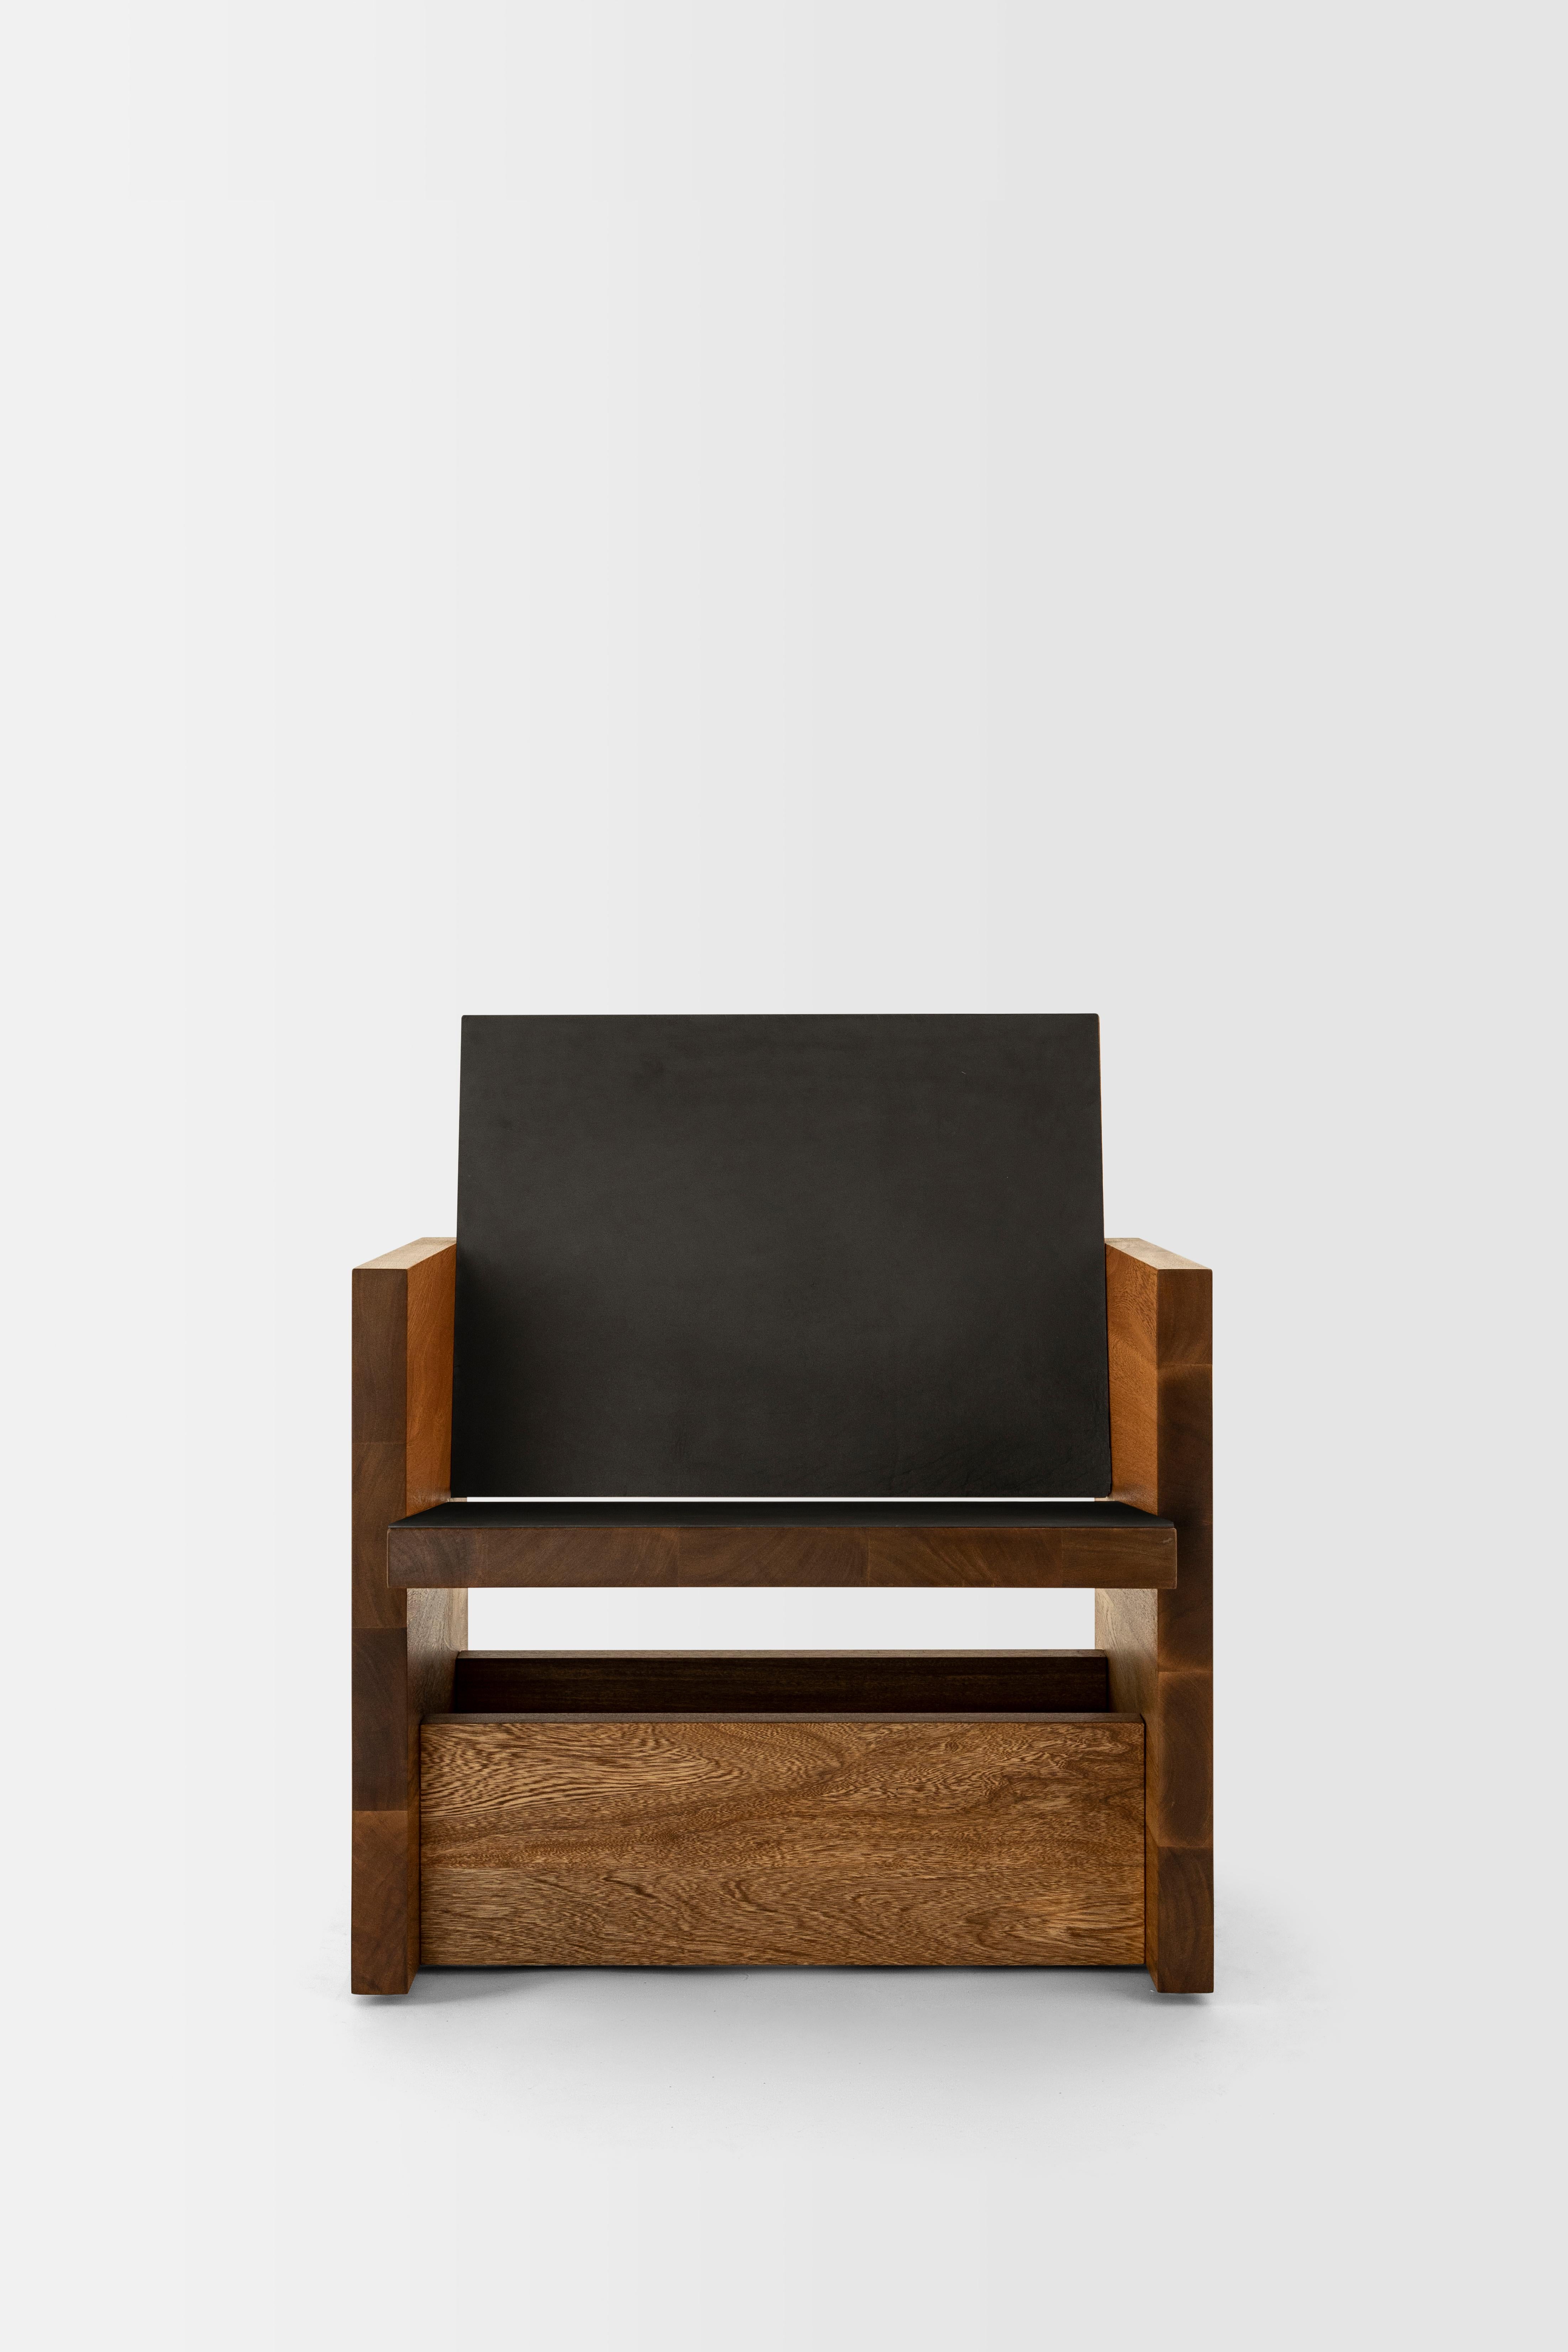 Des lignes simples et des matériaux nobles définissent Clavijero, une chaise et un banc de salon. Fabriquées à la main à l'aide de techniques de menuiserie traditionnelles, ces deux pièces sont créées pour la conversation, la lecture, le repos et la